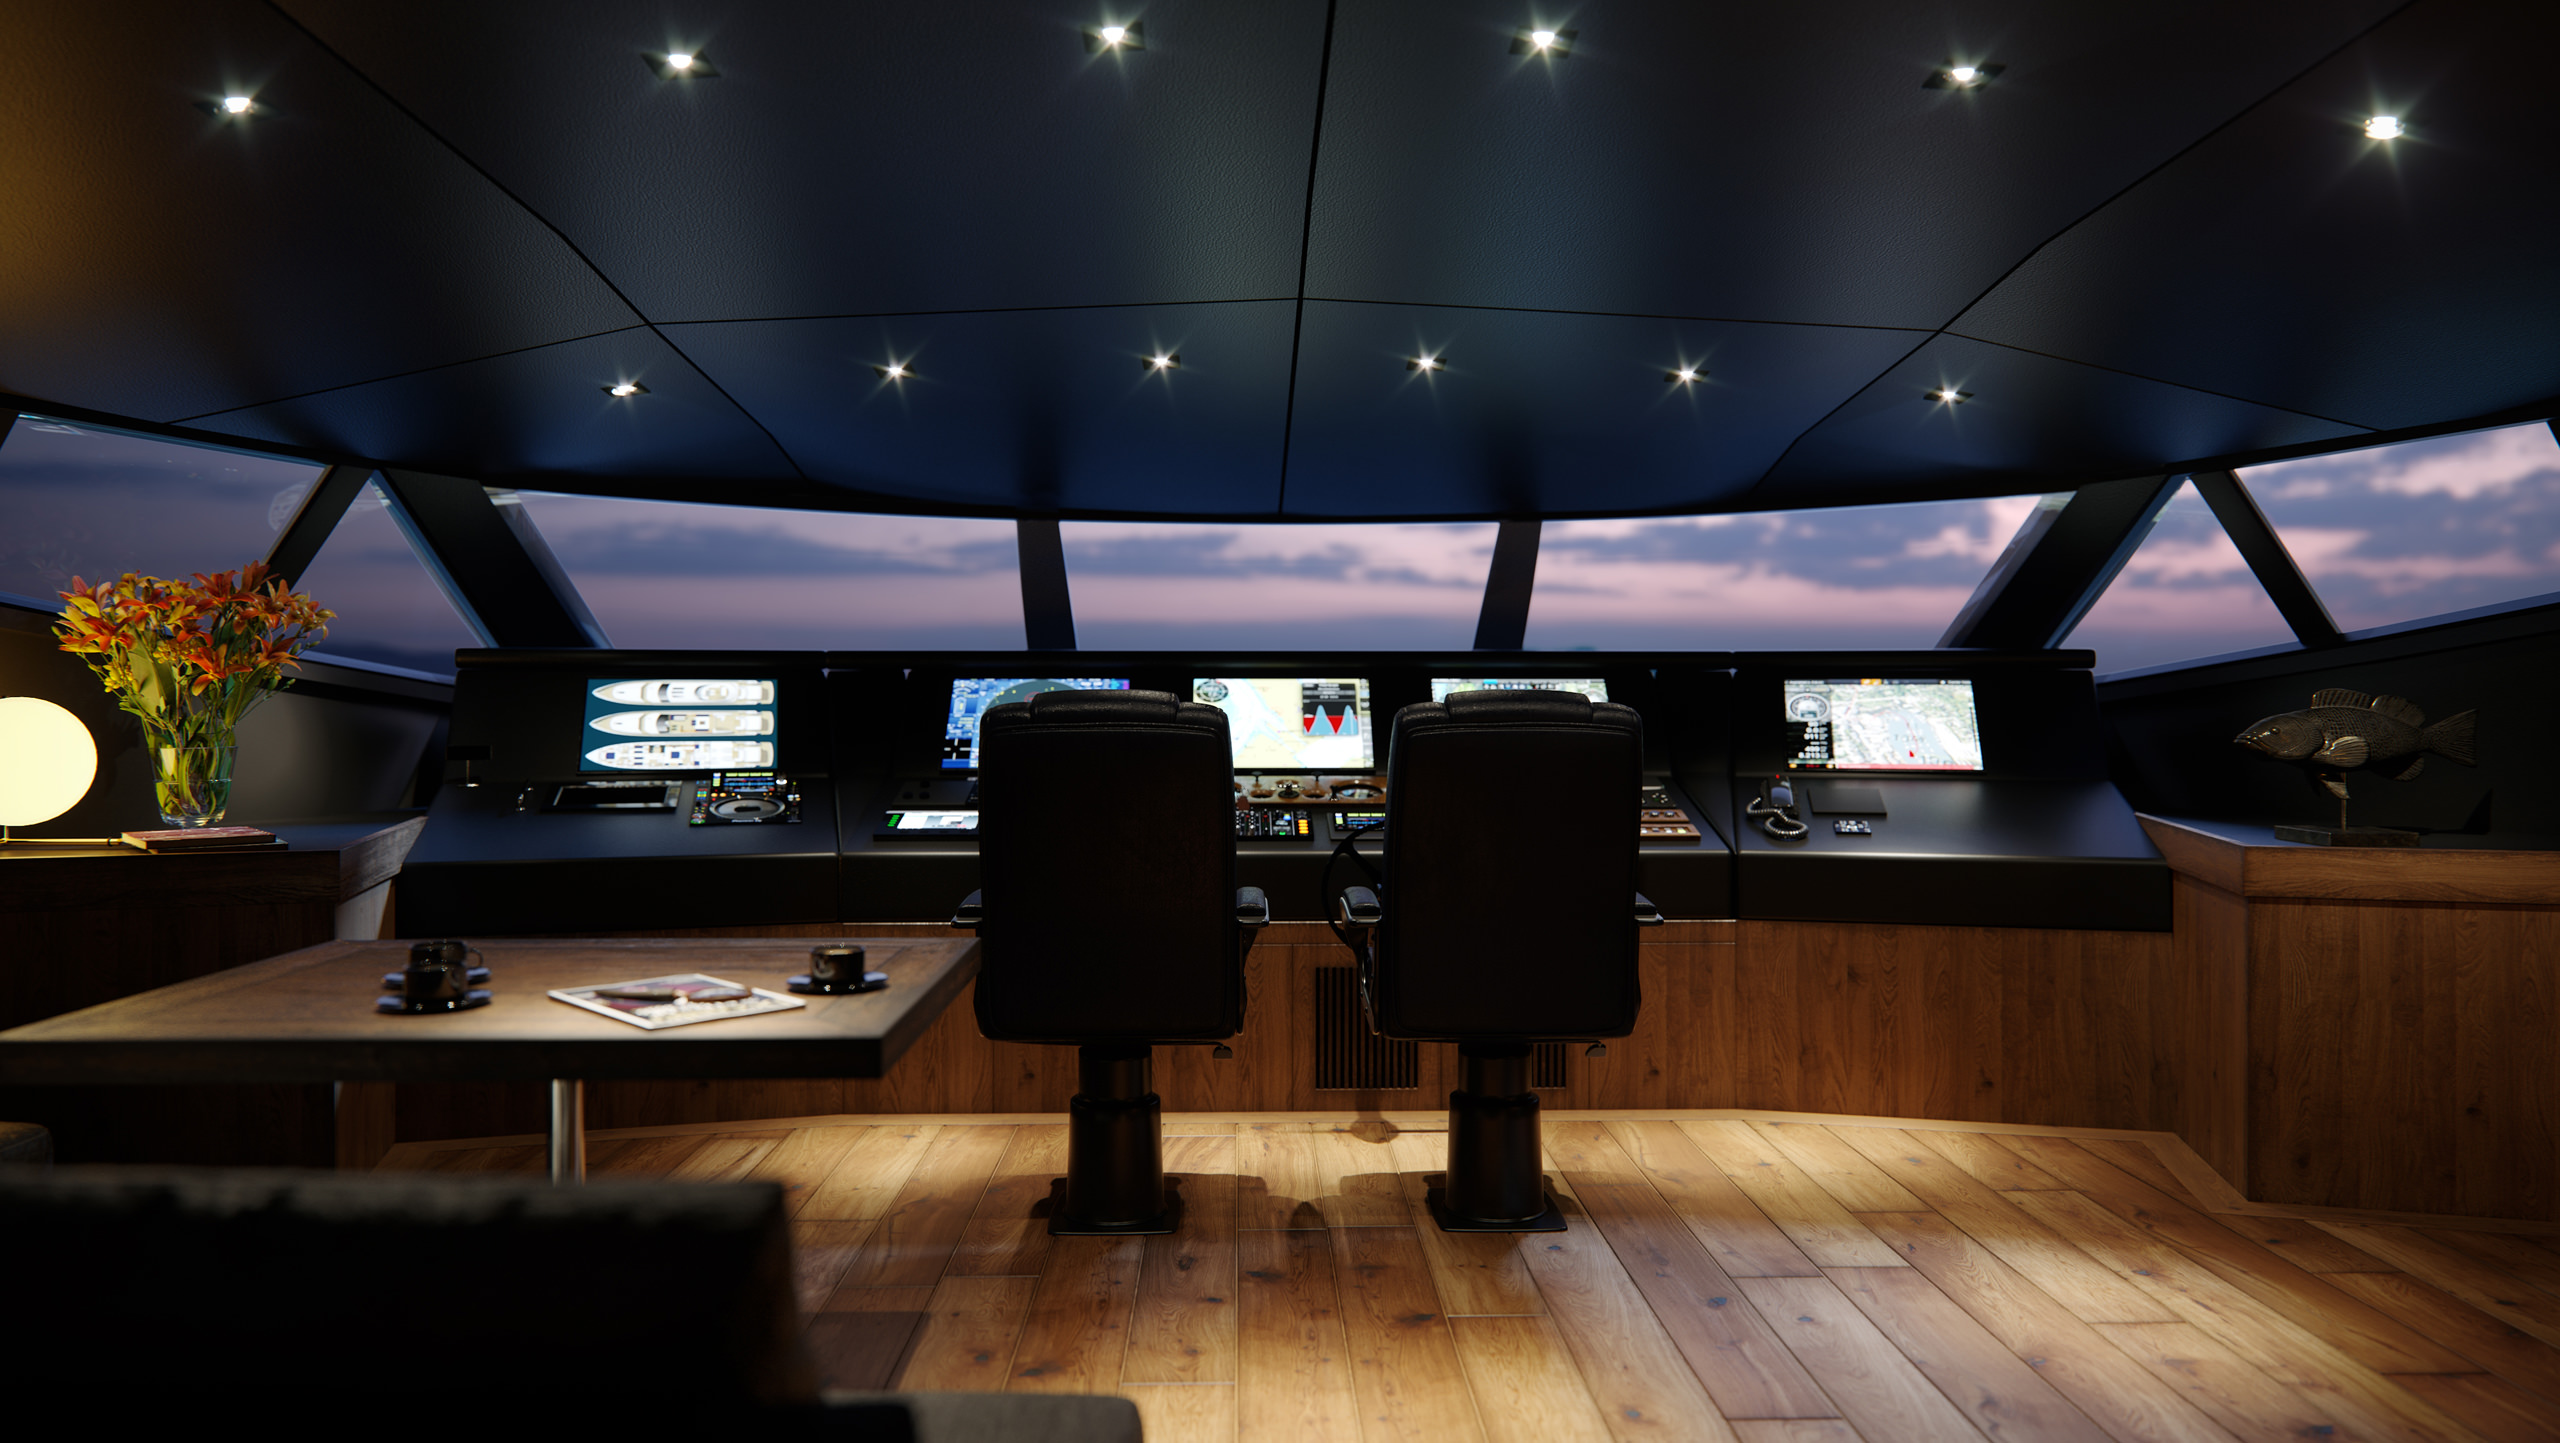 Rendu 3D d'un superbateau à l'intérieur de la cabine du capitaine avec un tableau de bord massif comportant divers boutons et leviers pour la direction du bateau, ainsi que des cartes et des informations techniques sur le navire